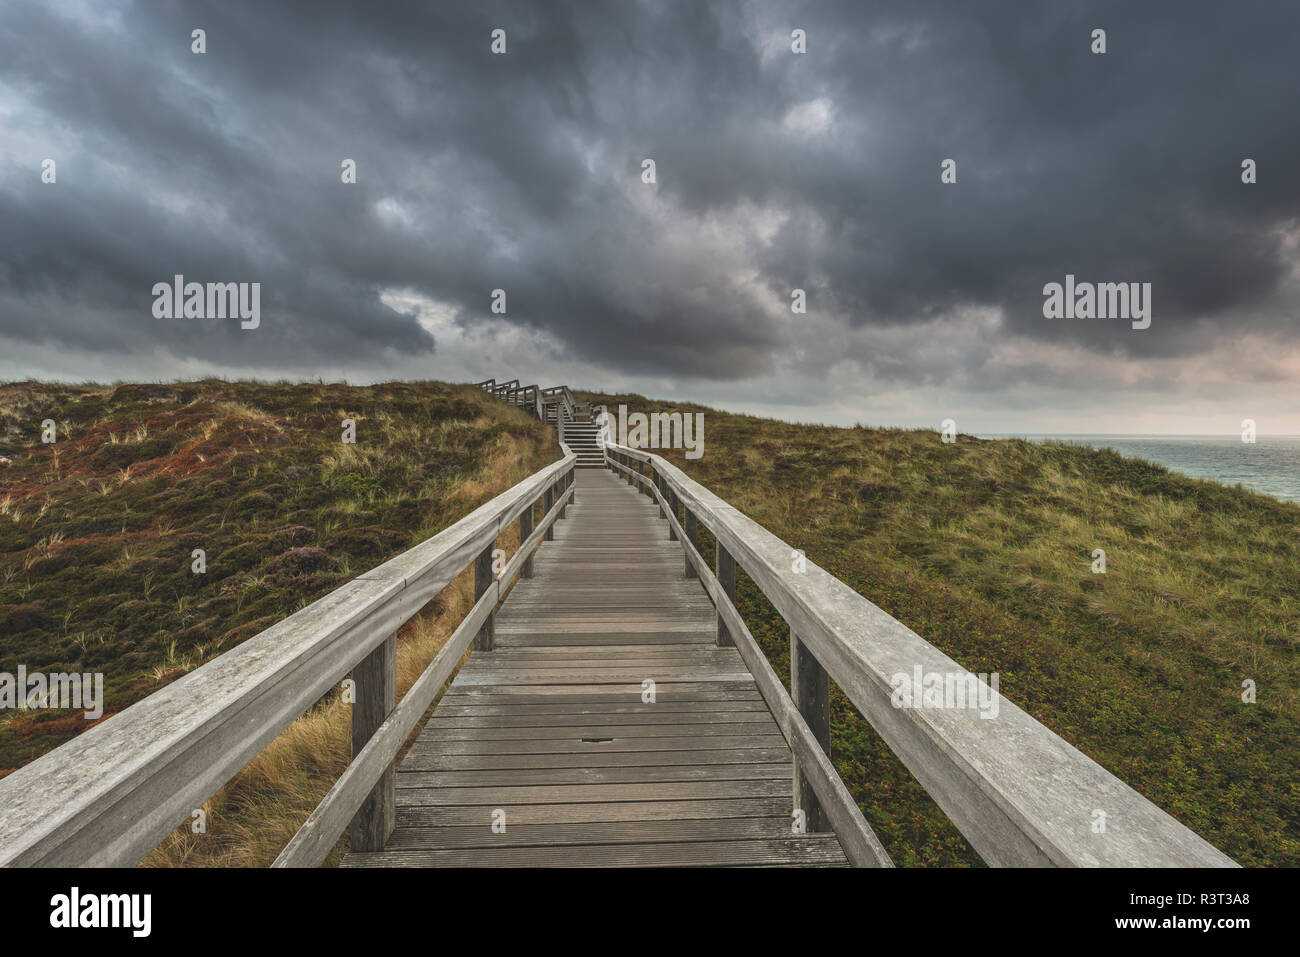 Germany, Schleswig-Holstein, Sylt, Wenningstedt, boardwalk to the beach under rain clouds Stock Photo